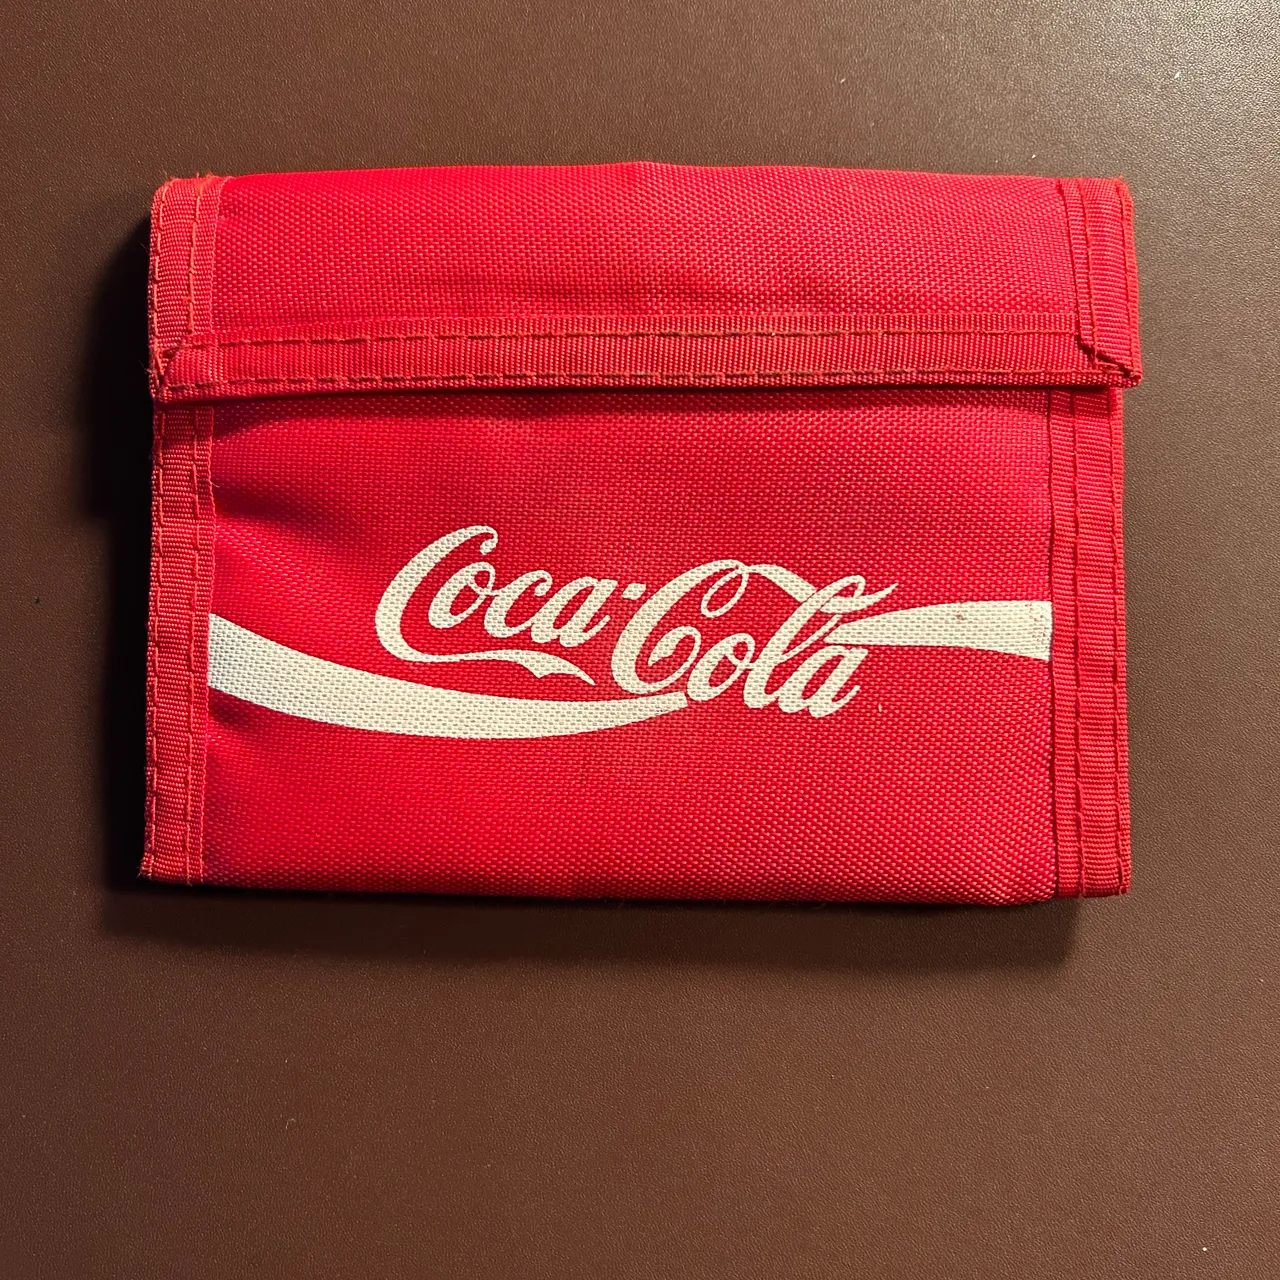 Coca-cola velcro wallet photo 2